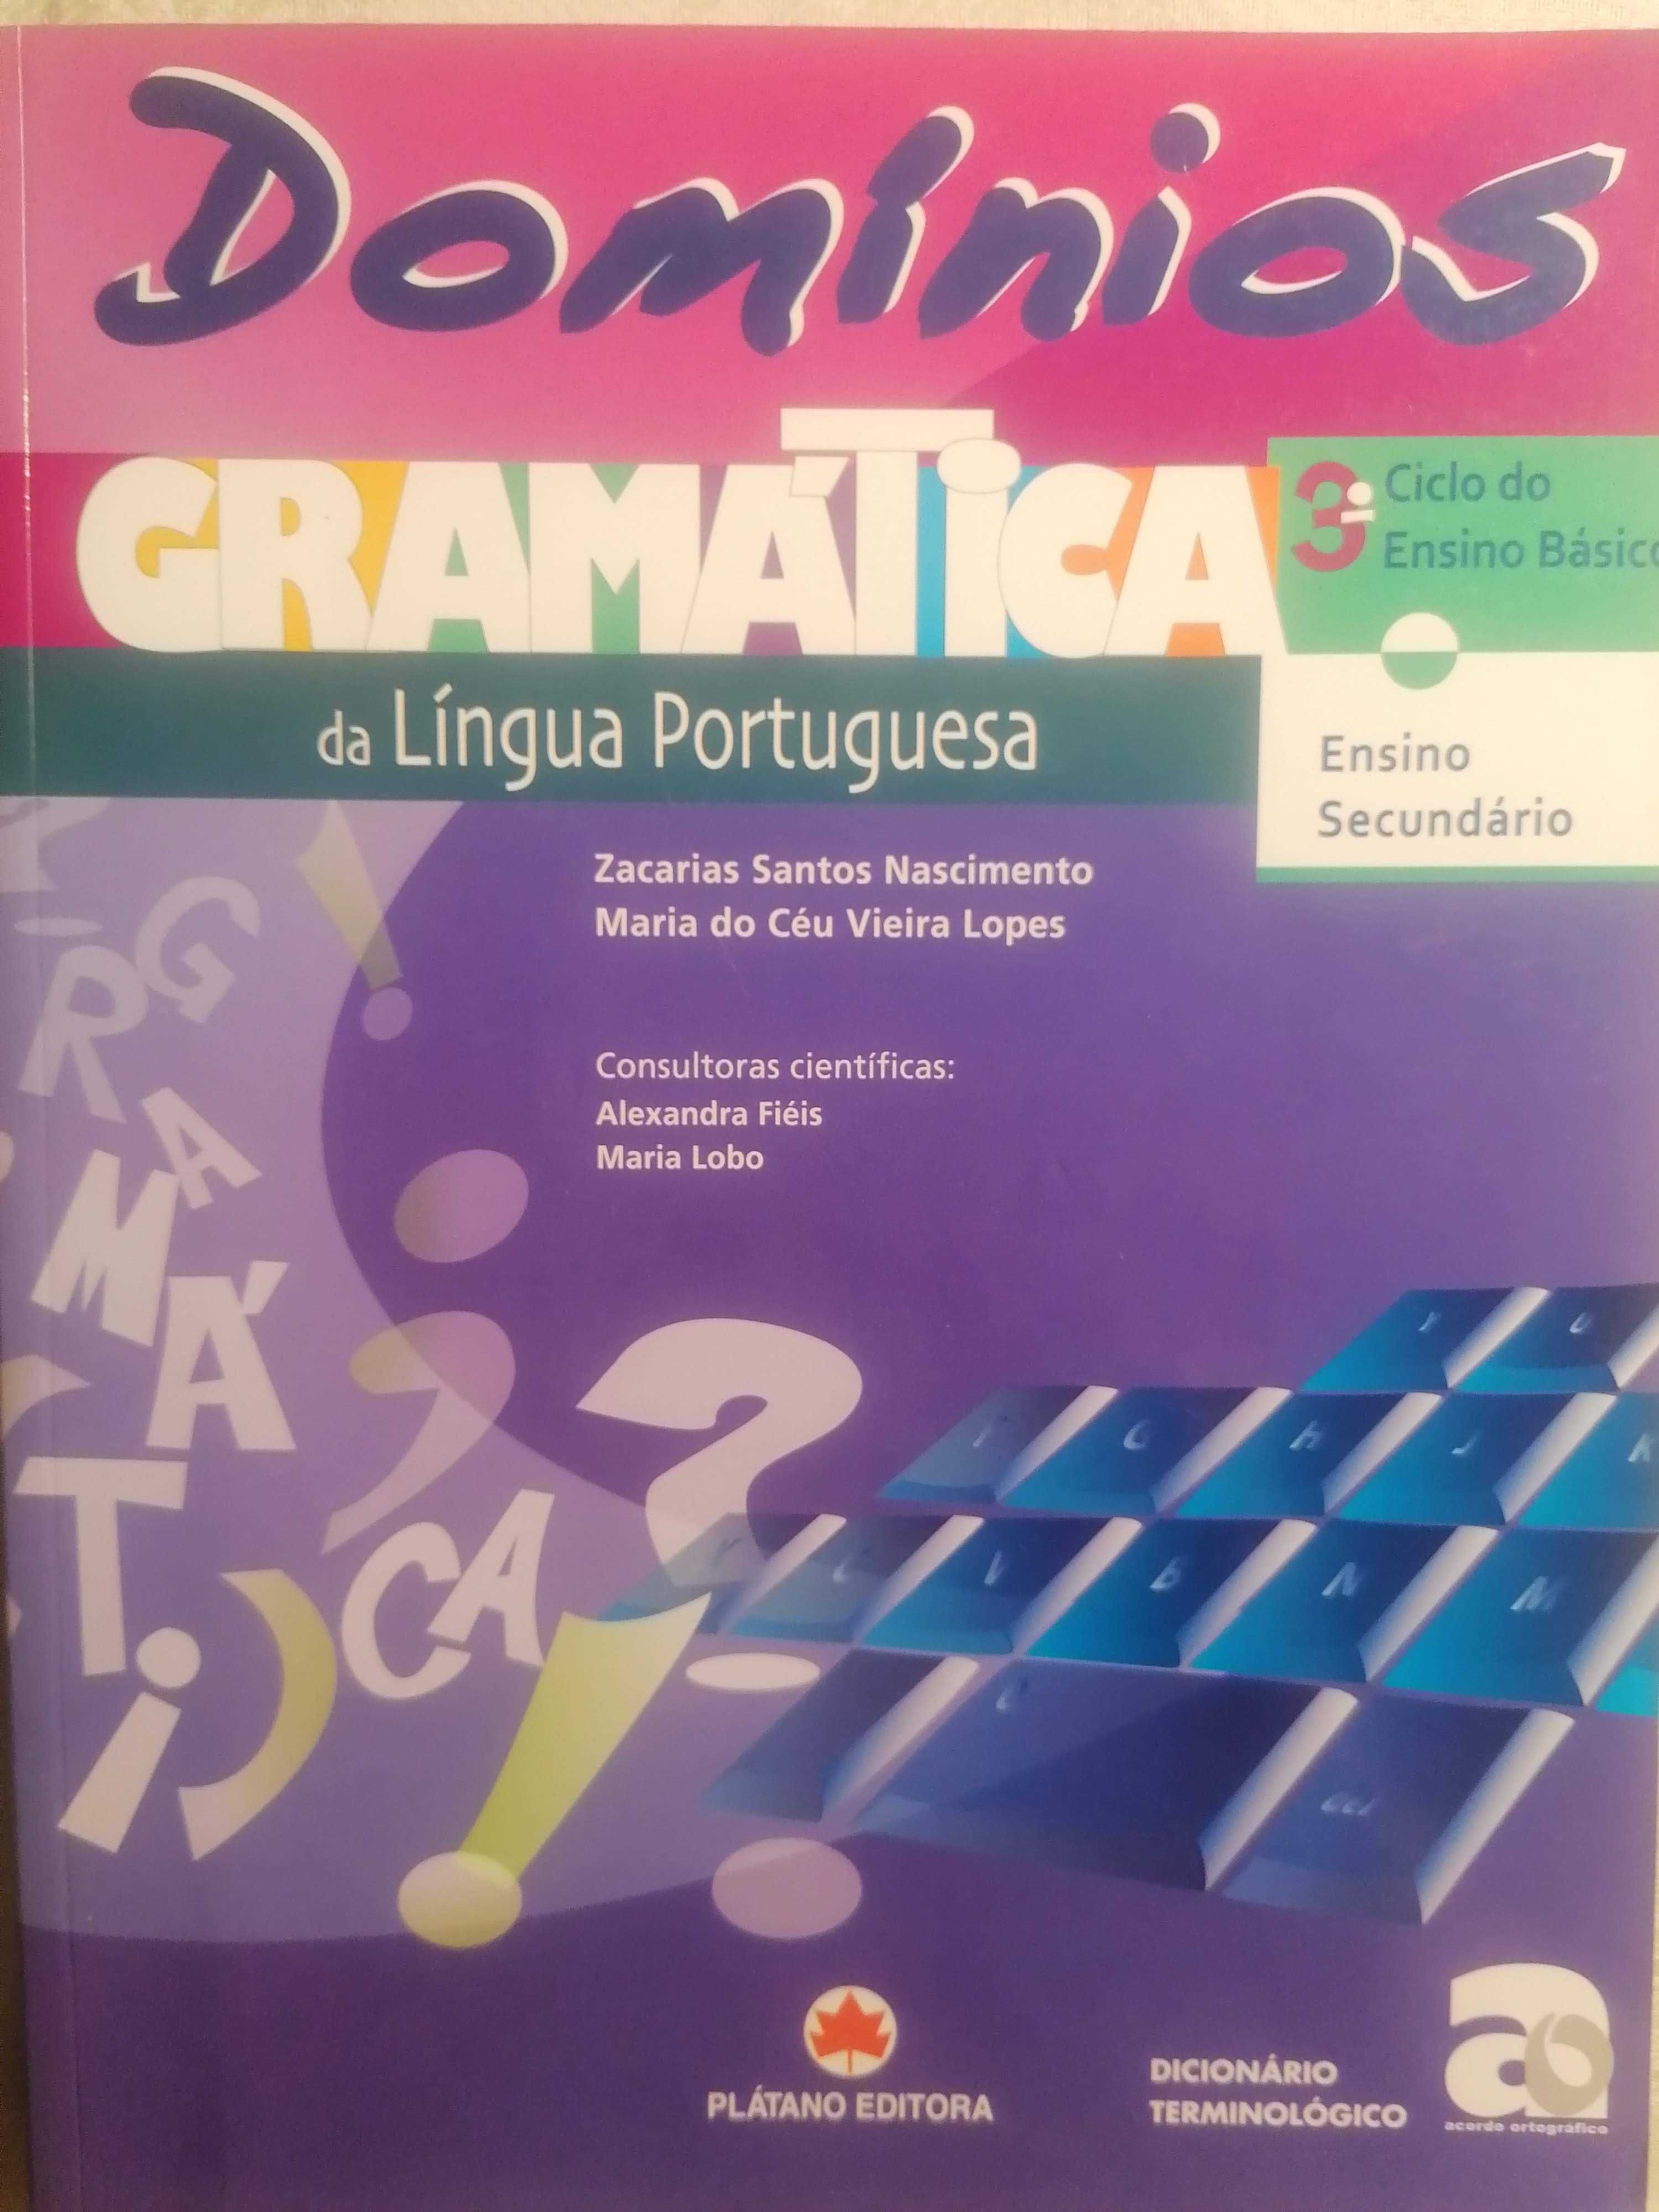 Gramática de Língua Portuguesa, Domínios, da Plátano, 3º C._Secundário